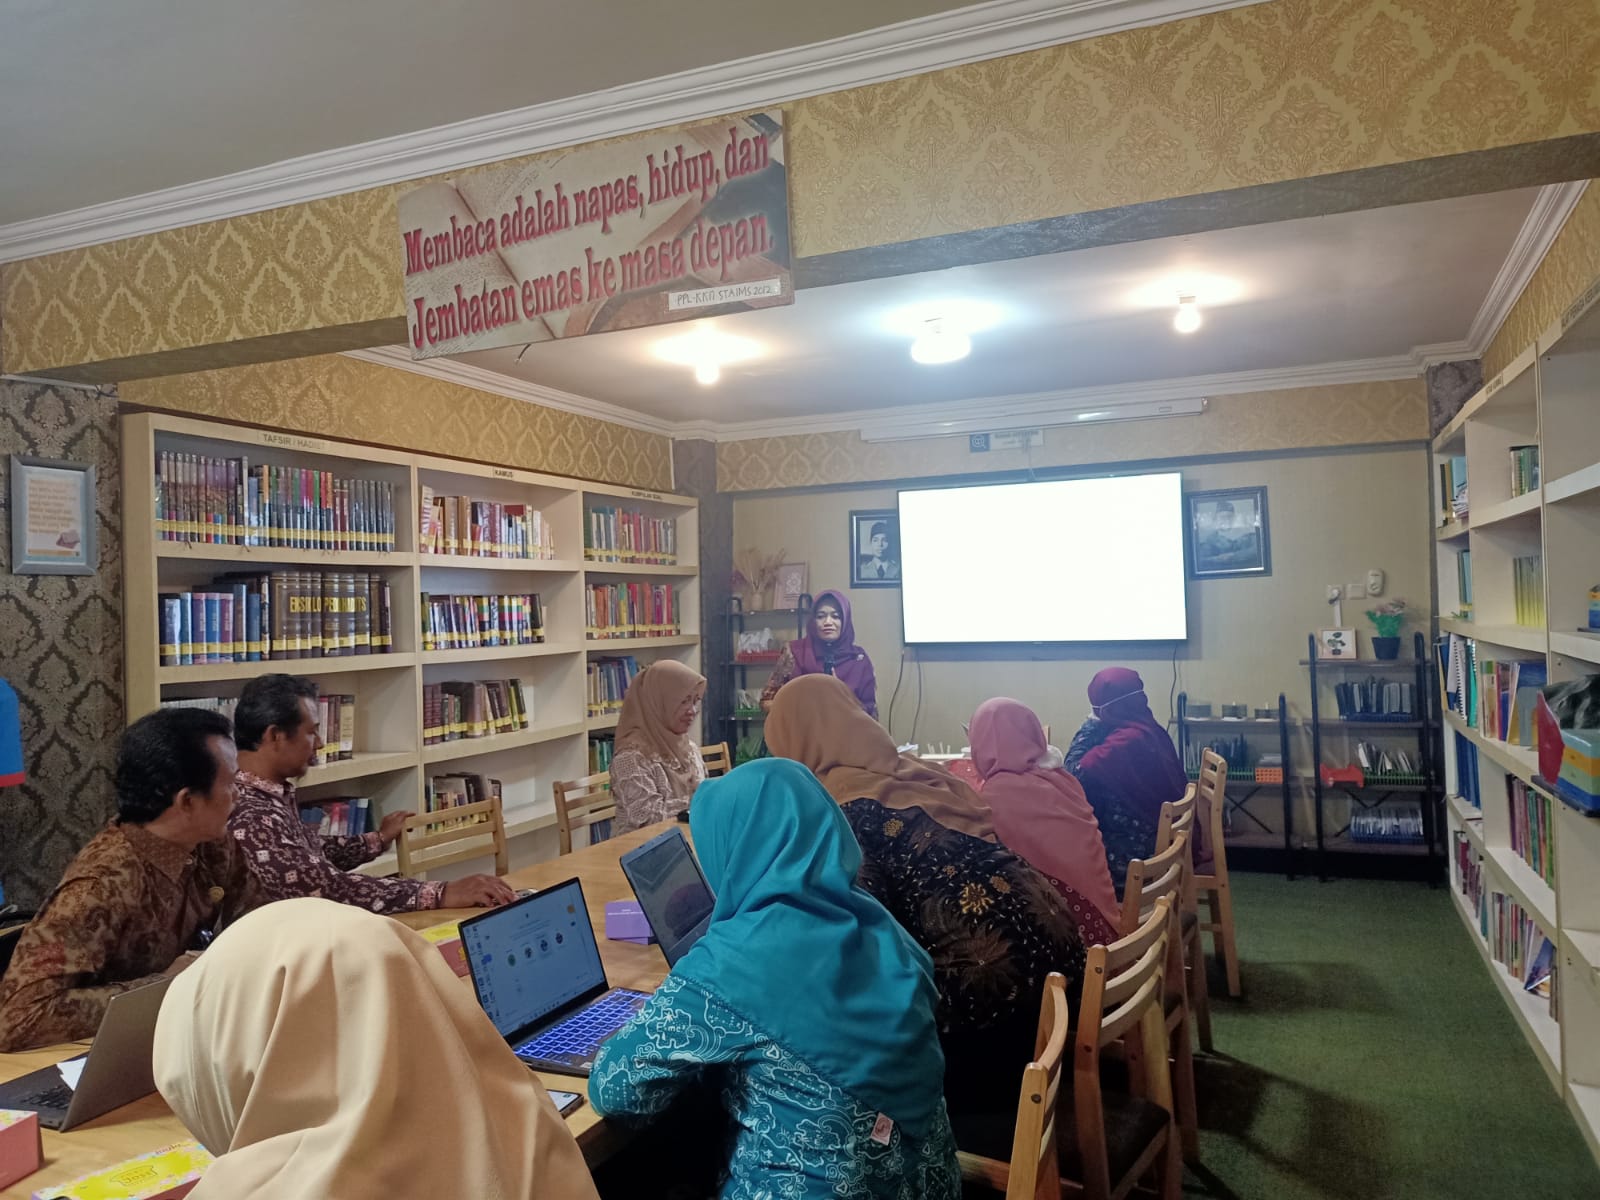 You are currently viewing Kolaborasi Berkelompok: Sekolah Menyatu dalam Merevitalisasi Pendidikan di Kota Yogyakarta